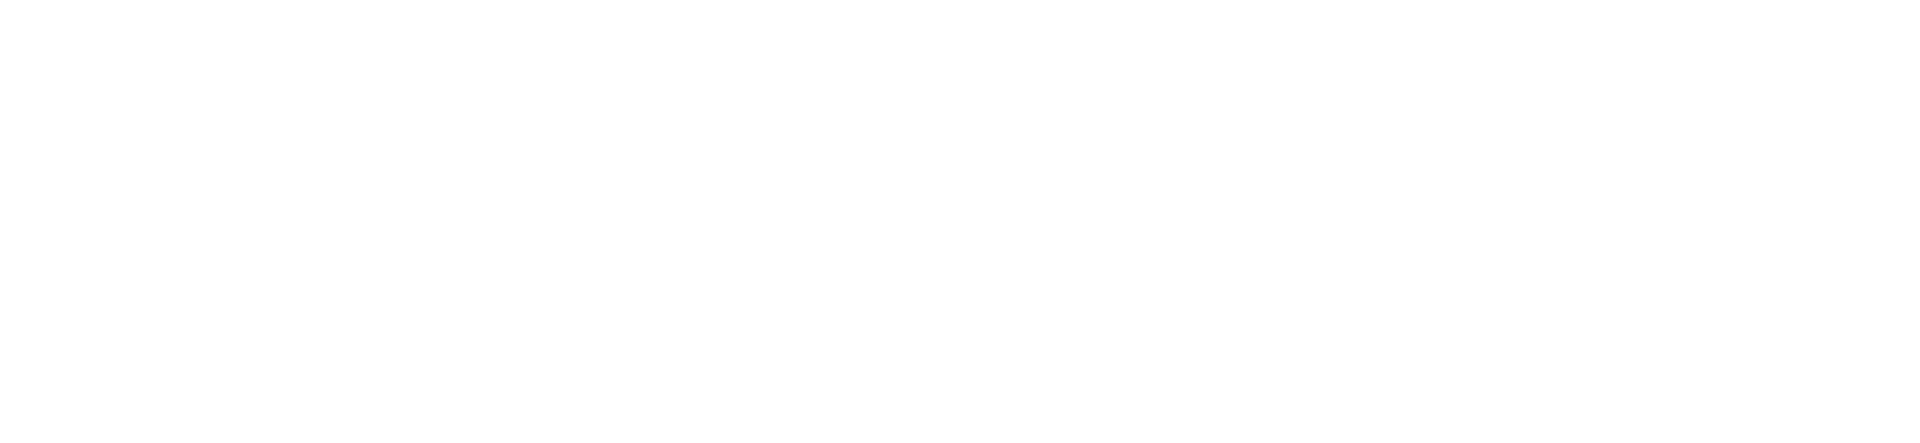 Logotipo ENACOM branco